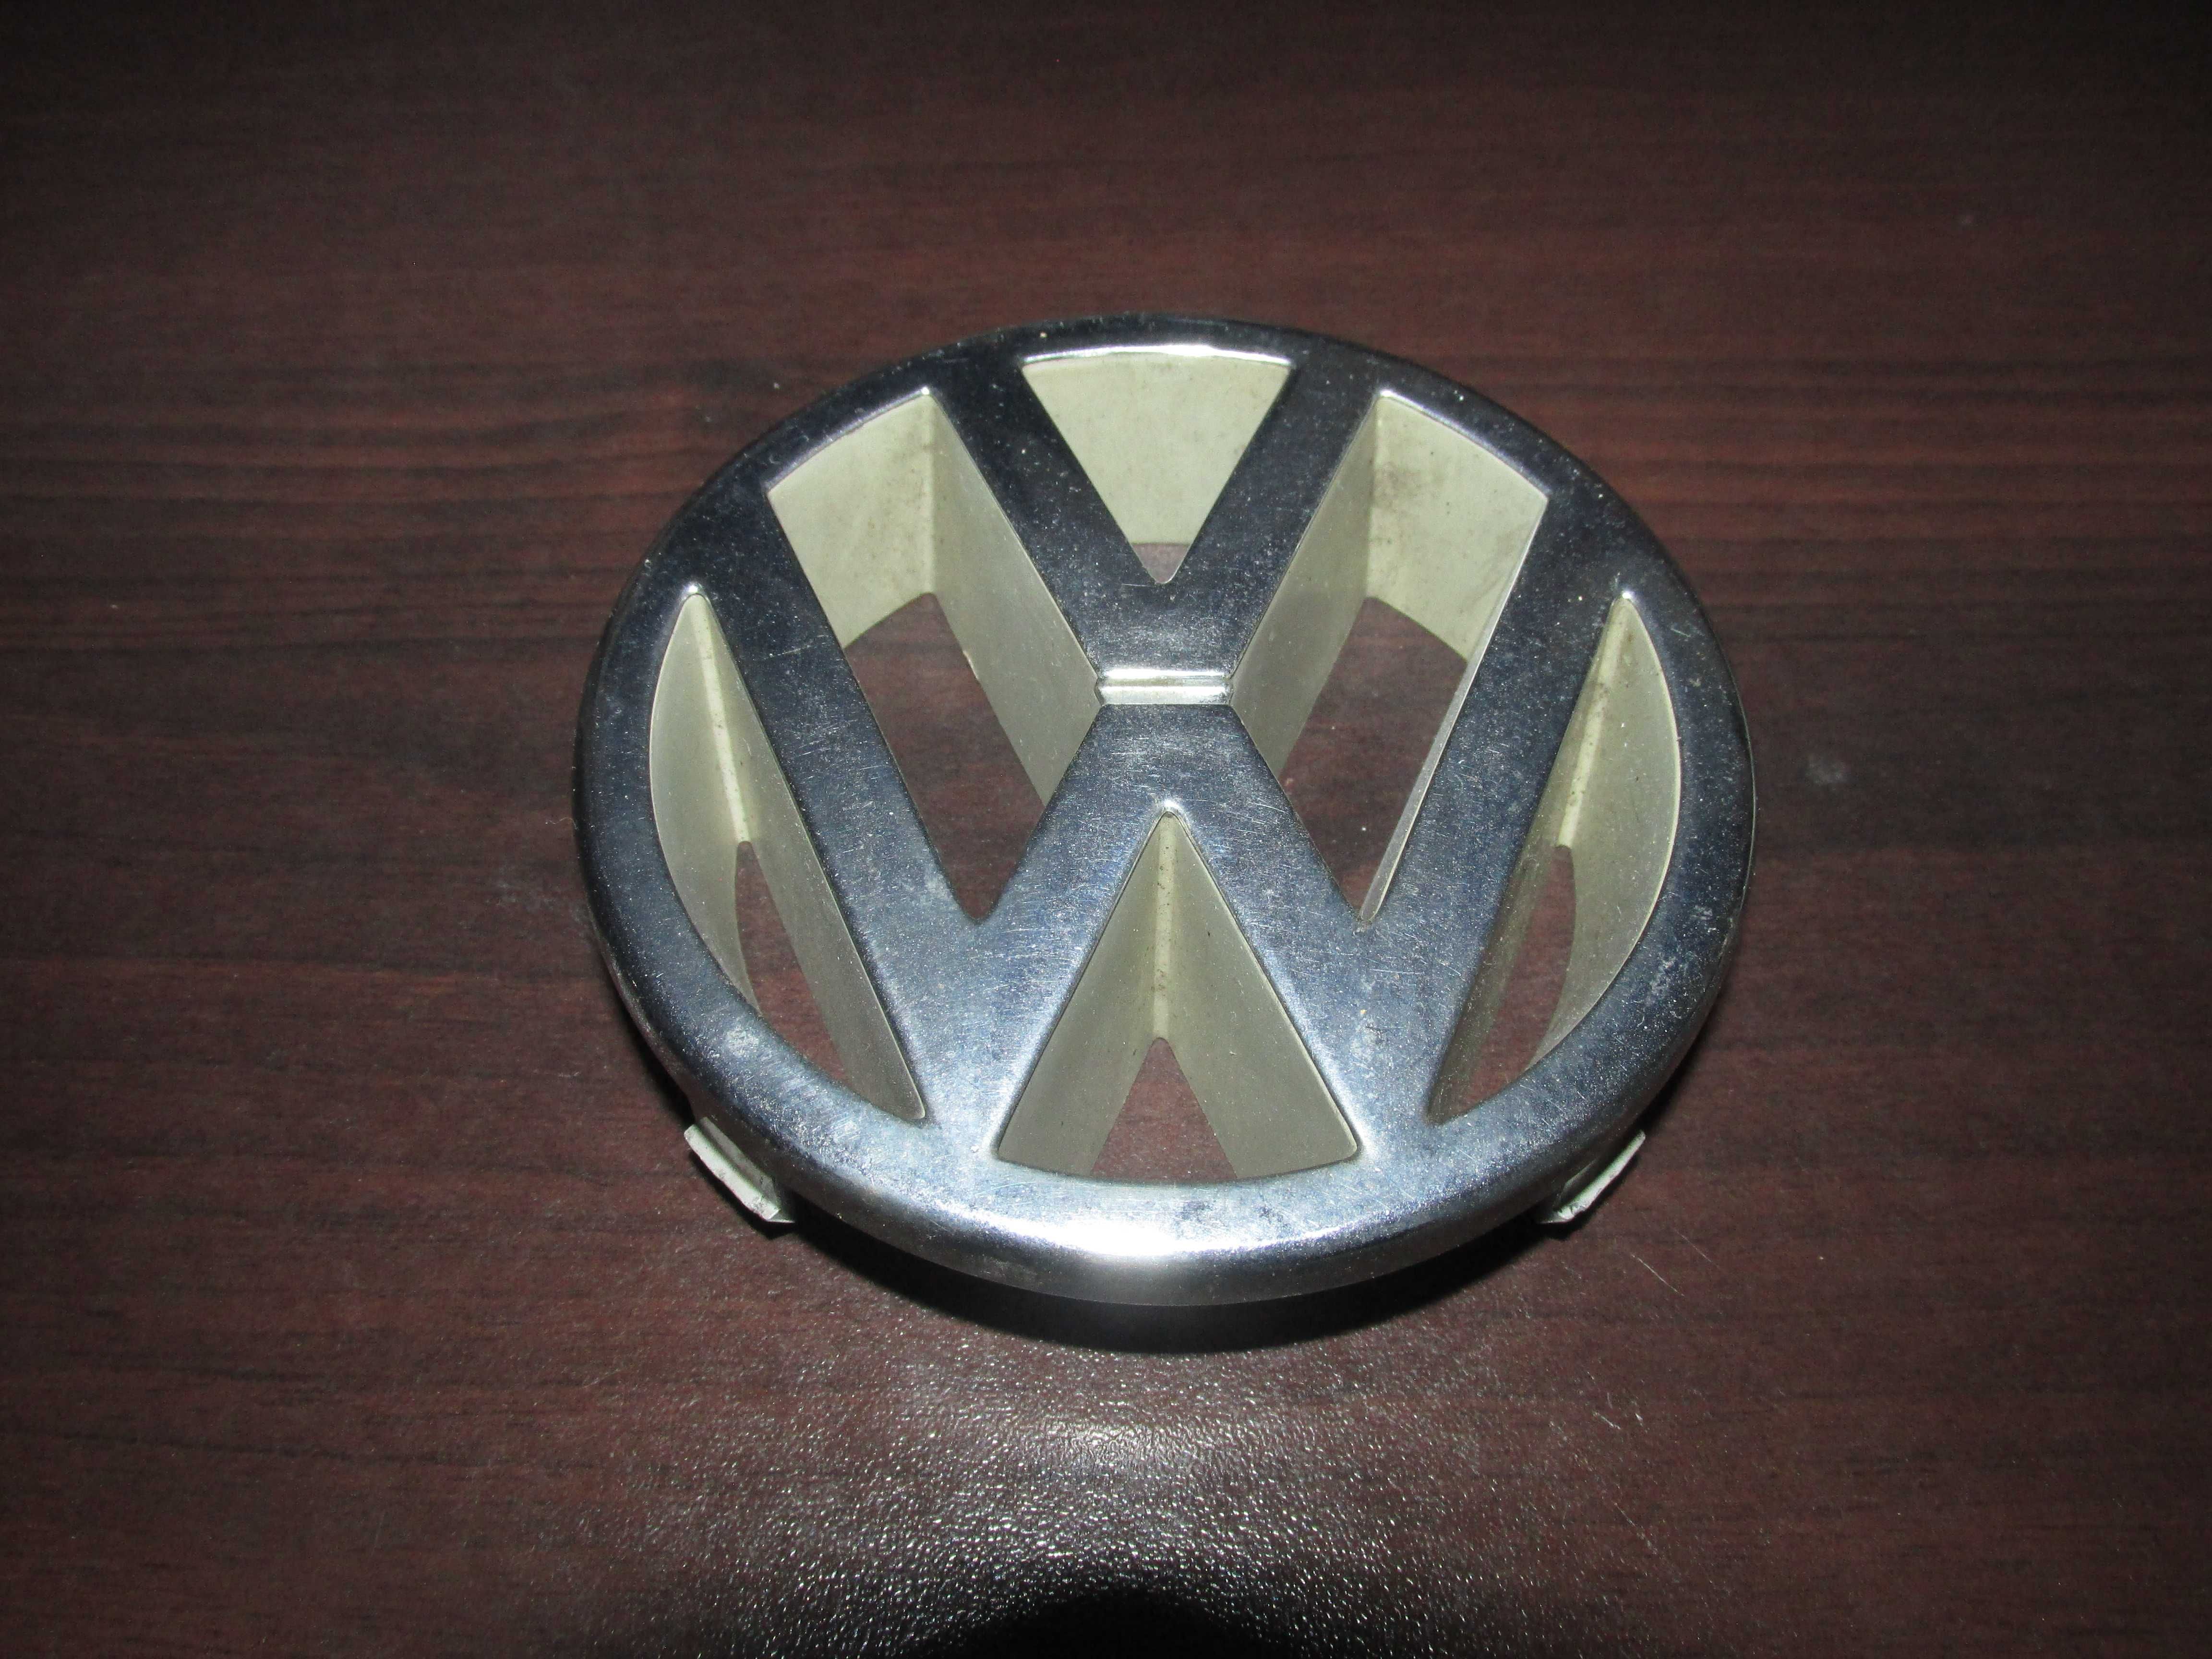 ORYGINALNY emblemat LOGO znaczek Volkswagen